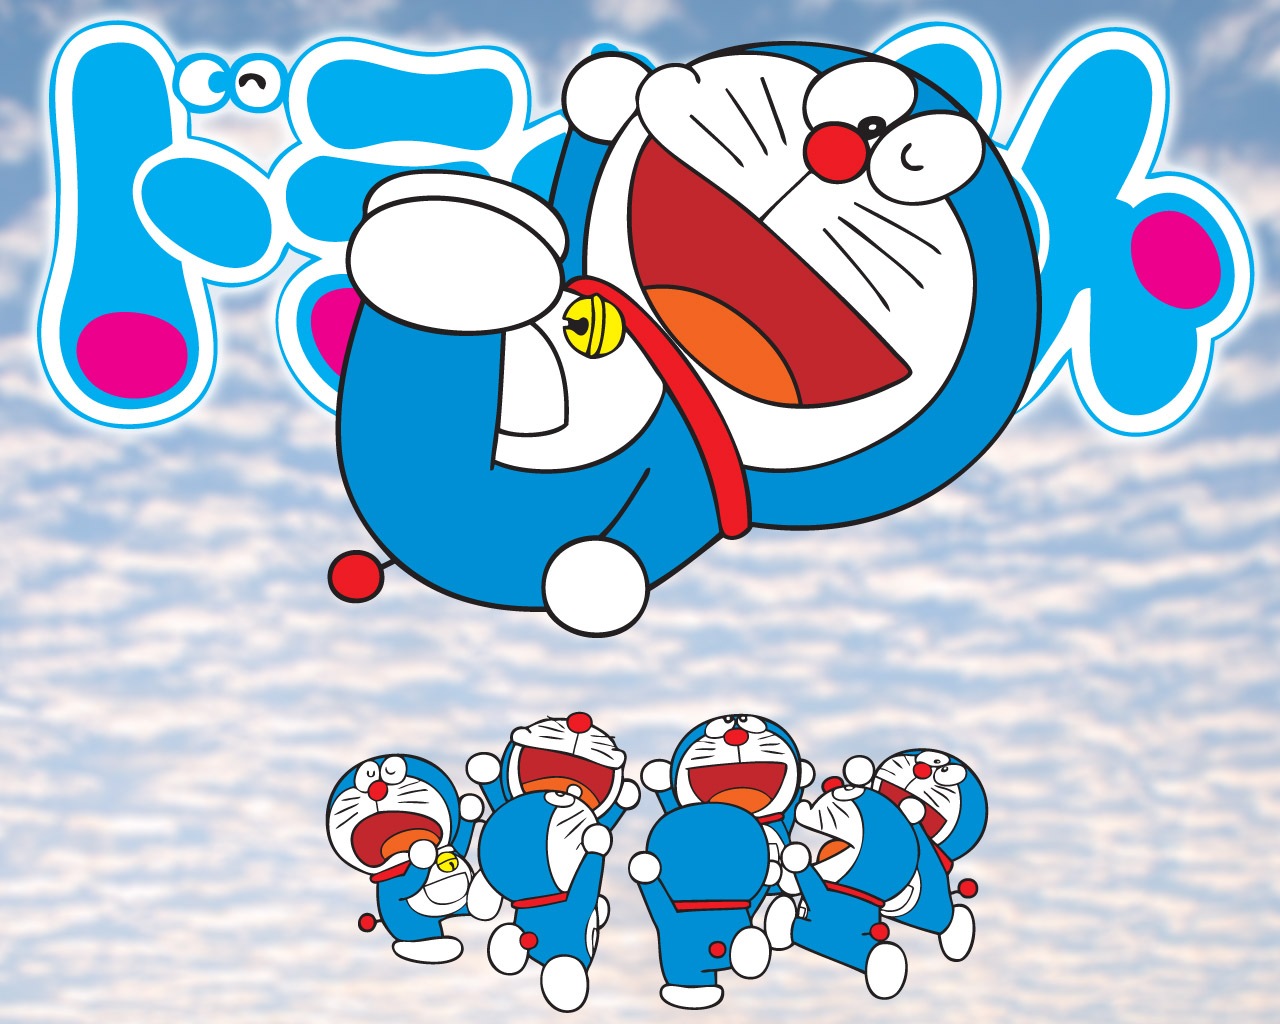 Kumpulan Koleksi Gambar Doraemon Yang Bisa Bergerak Gratis Cikimmcom